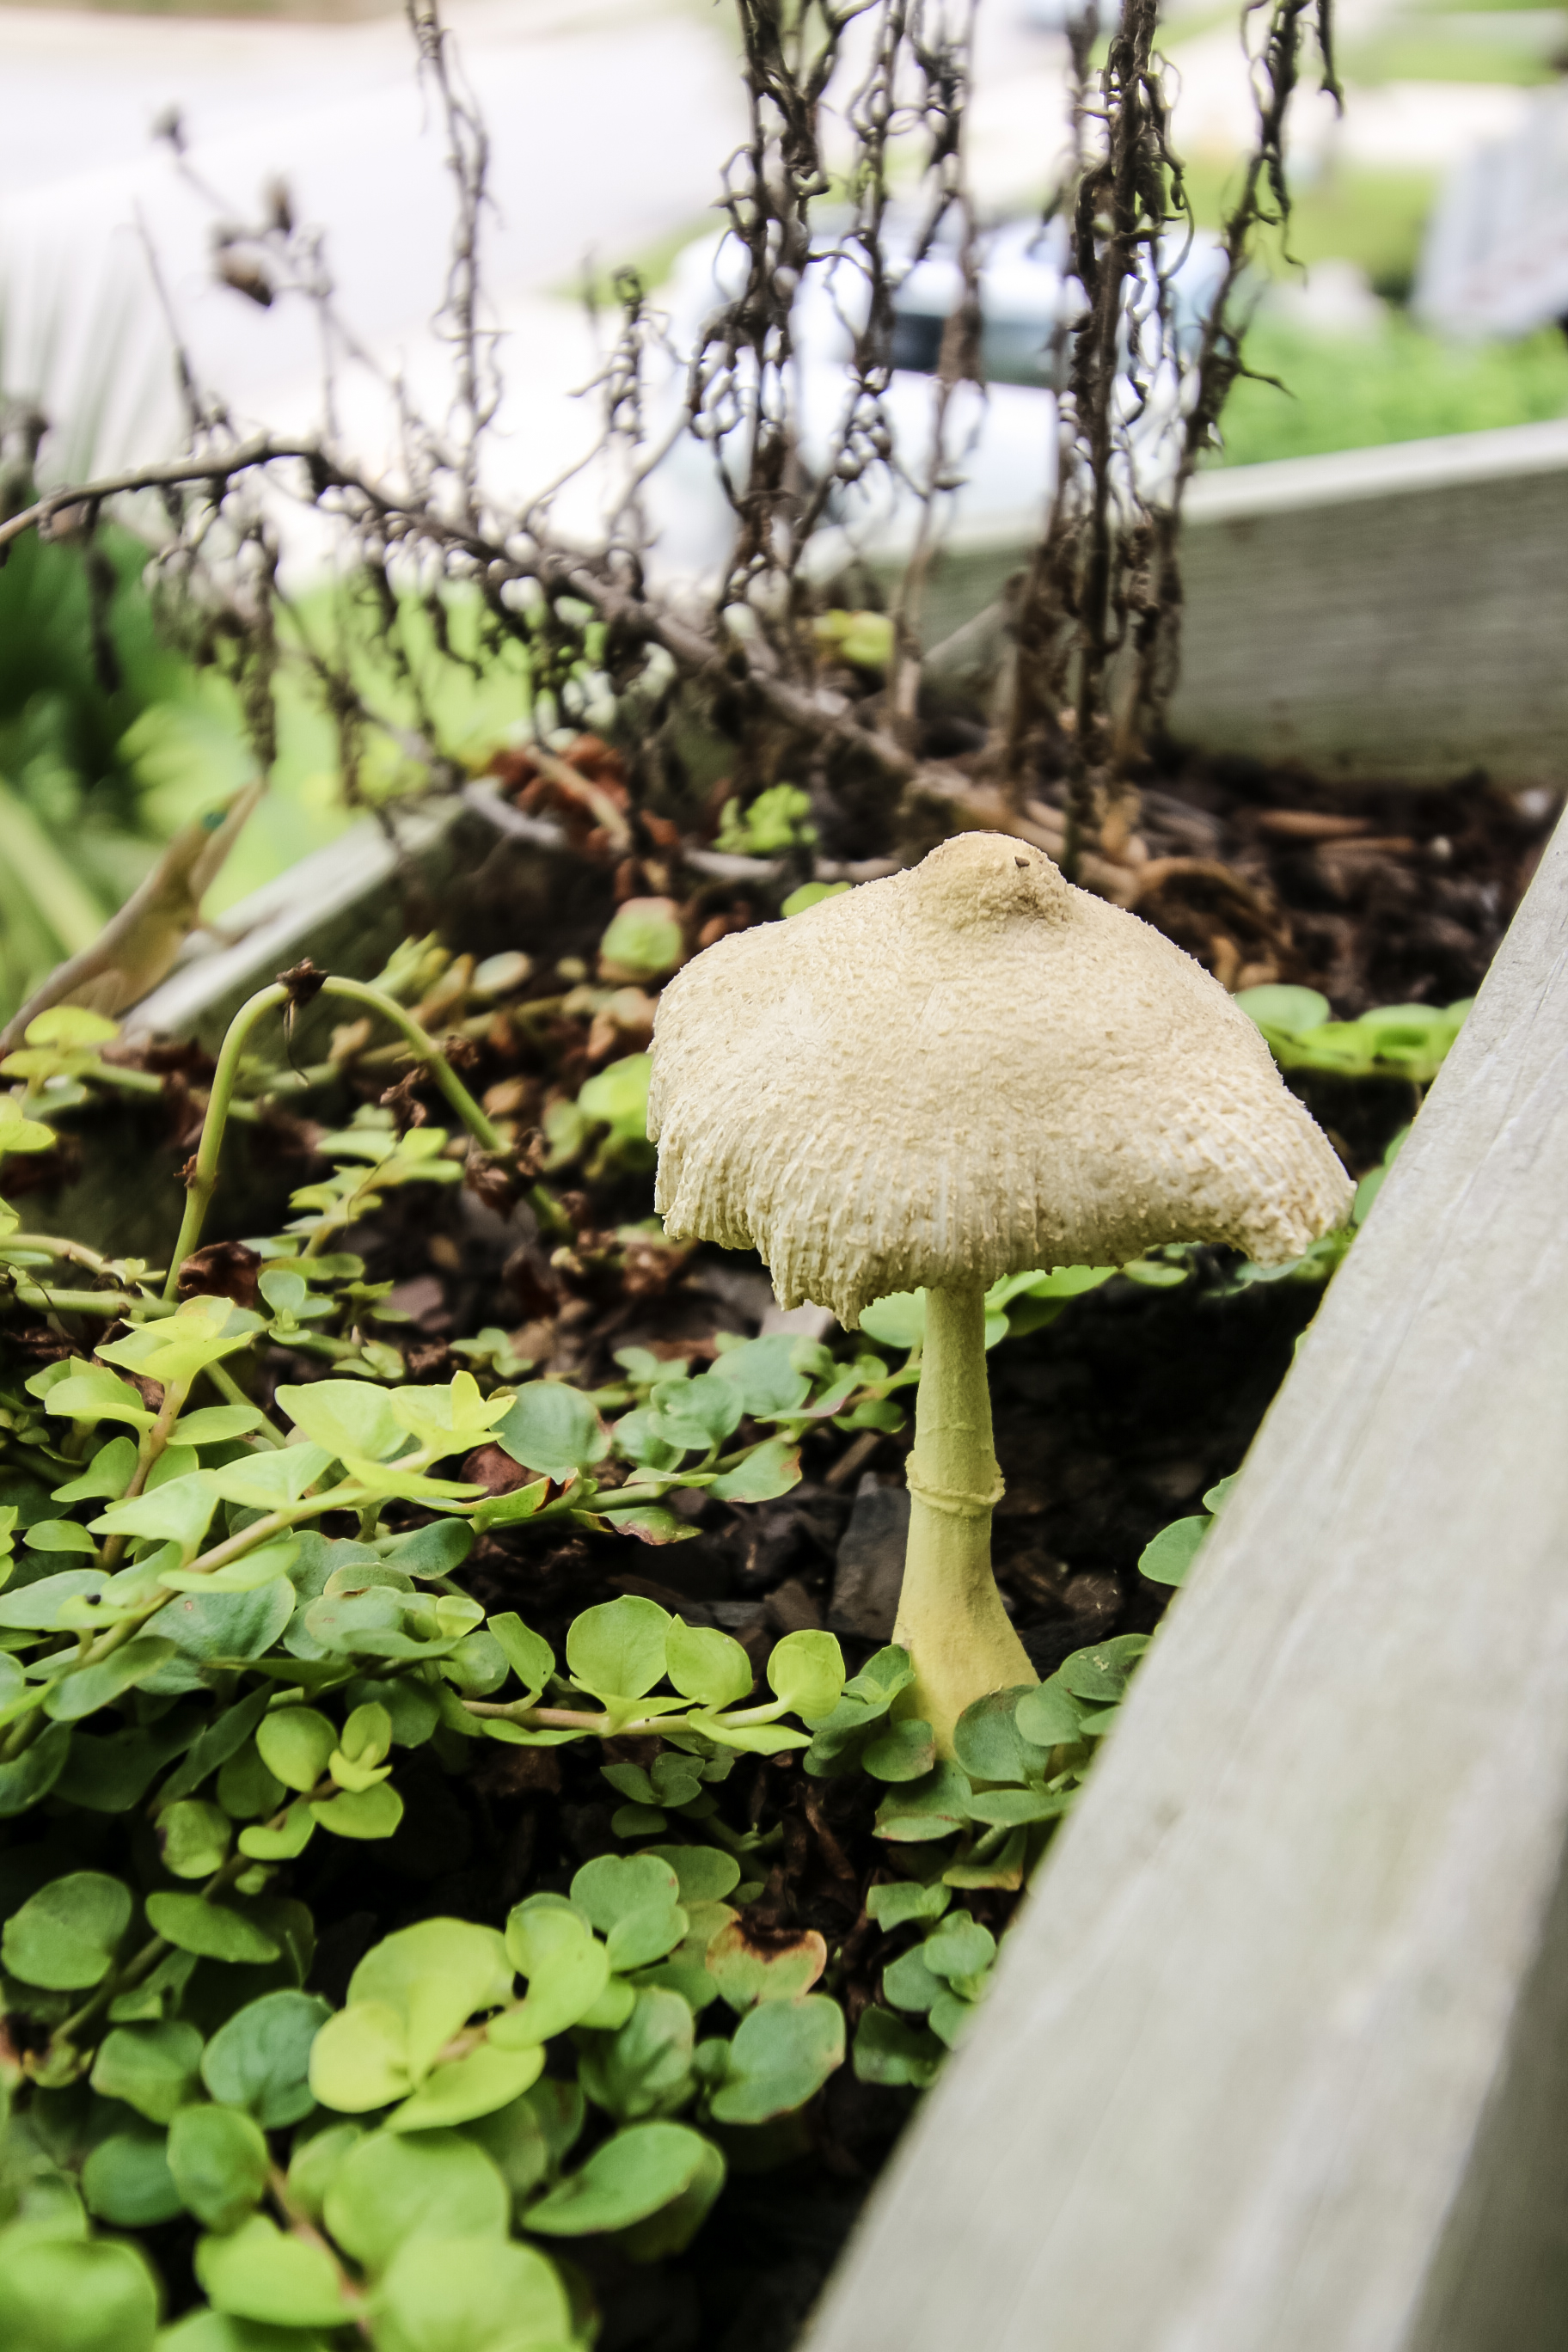 mushroom growing in planter